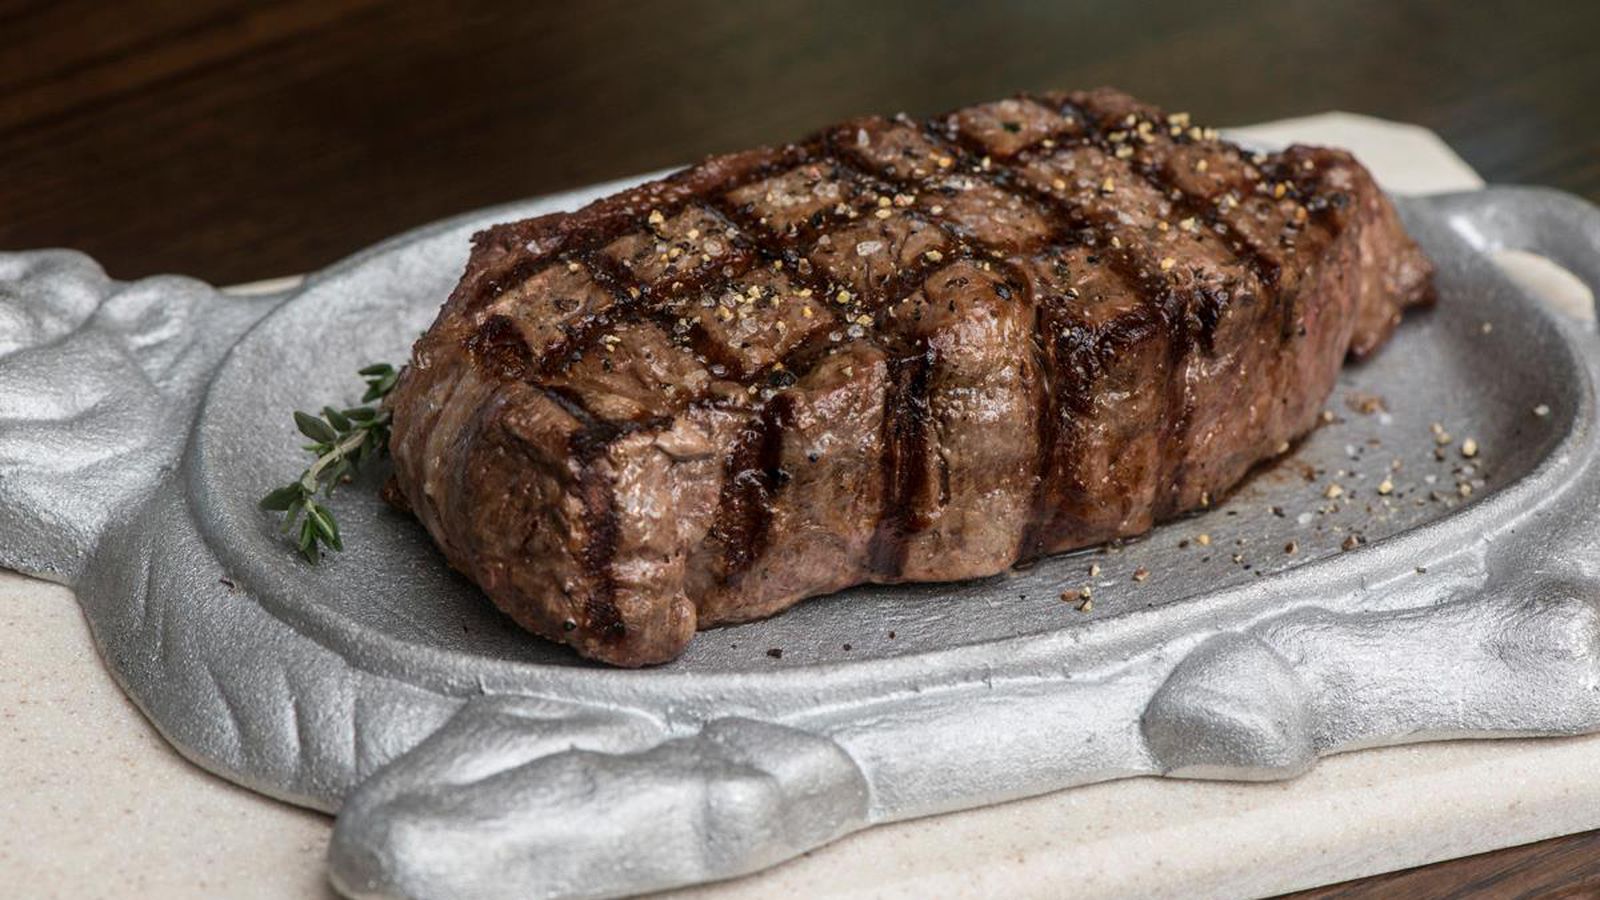 Taste Of Texas Sold Nearly $17 Million Worth Of Steak Last Year